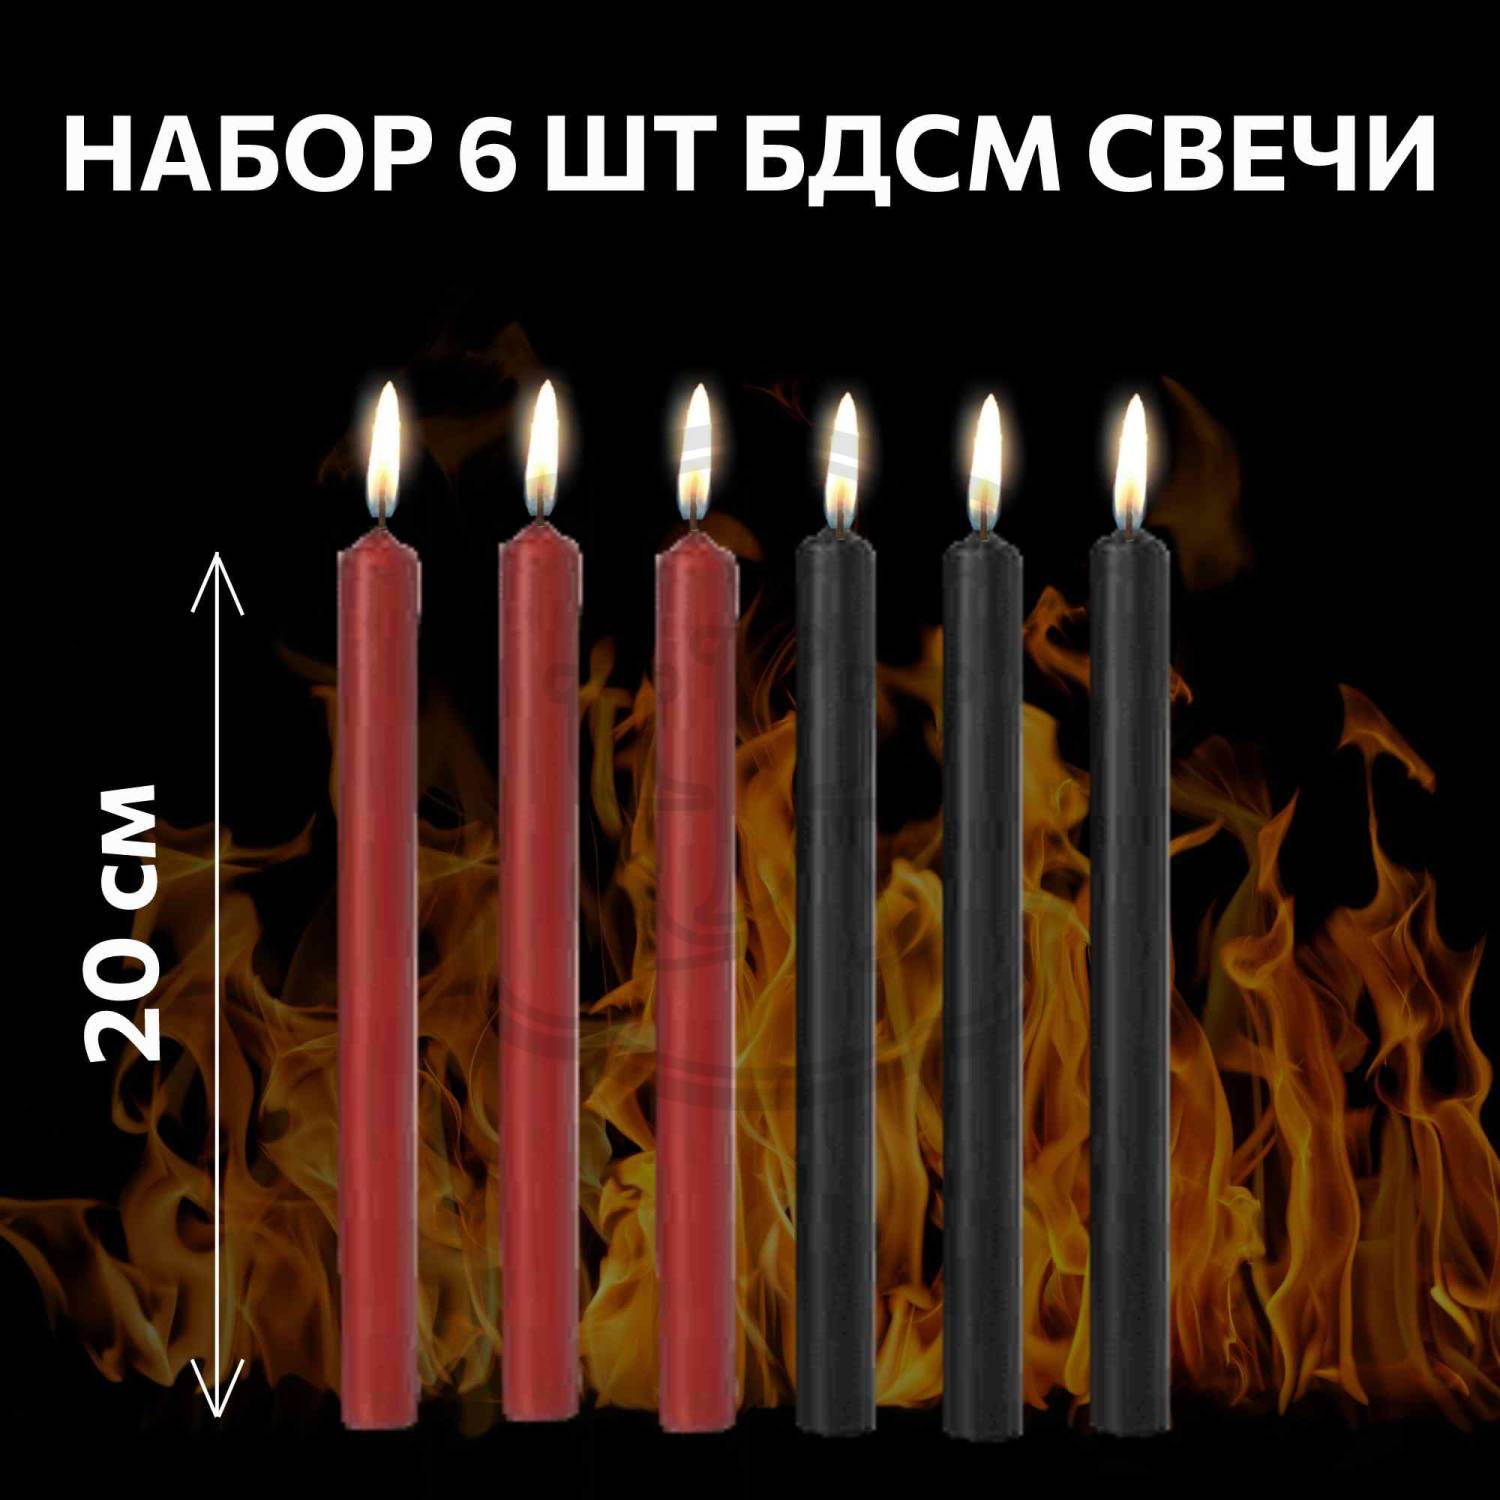 БДСМ свечи купить по лучшей цене в Киеве, Харькове, Украине | Сексшоп Амур